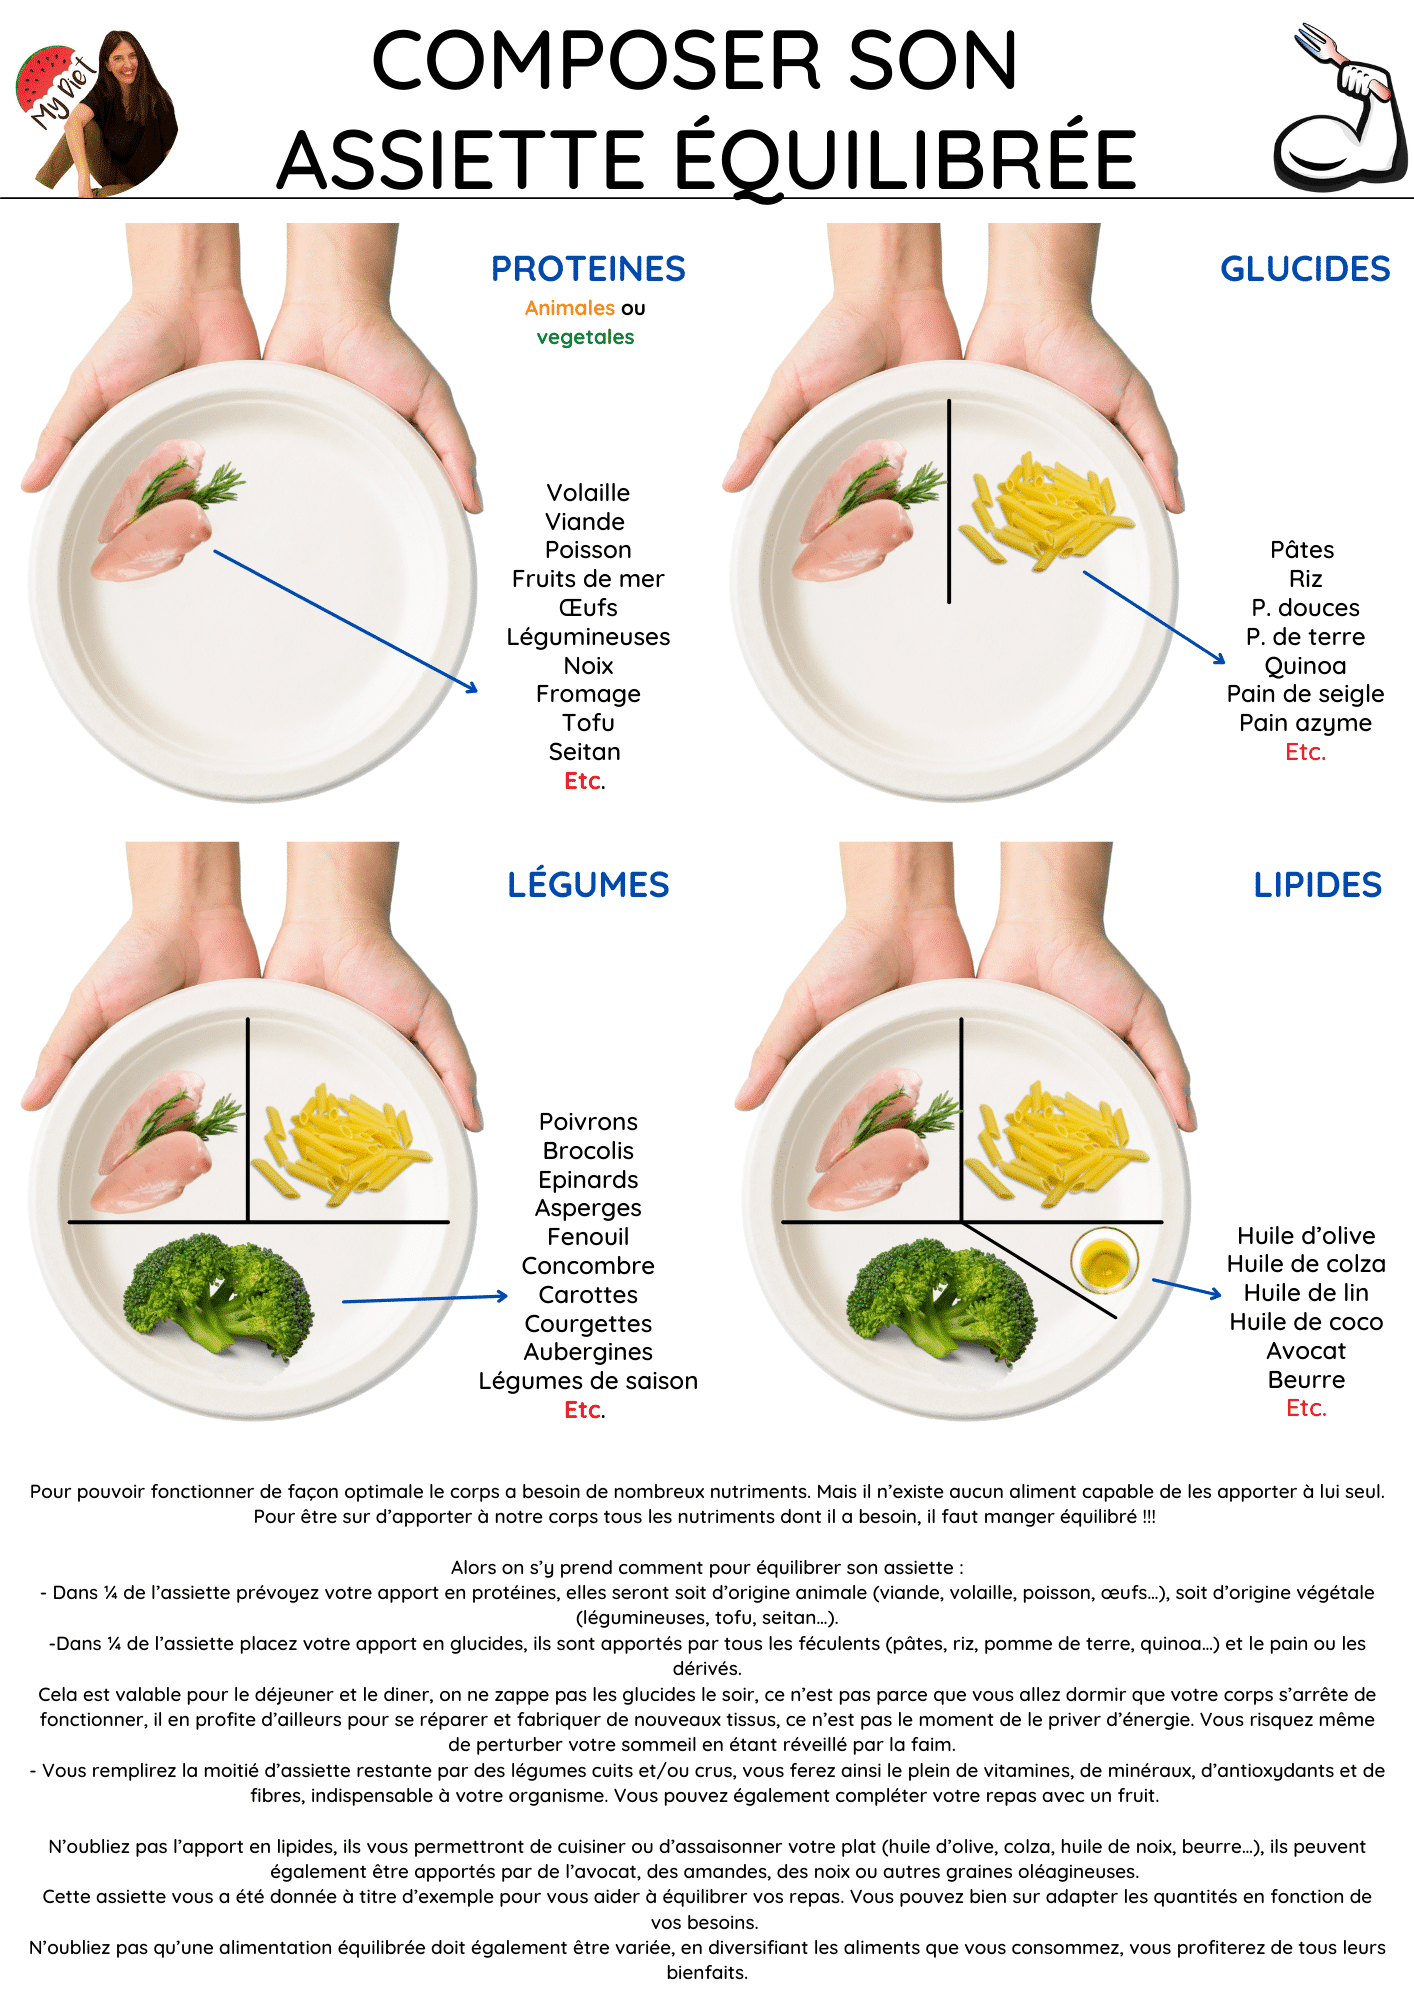 Repas équilibré pour maigrir : composer l'assiette parfaite